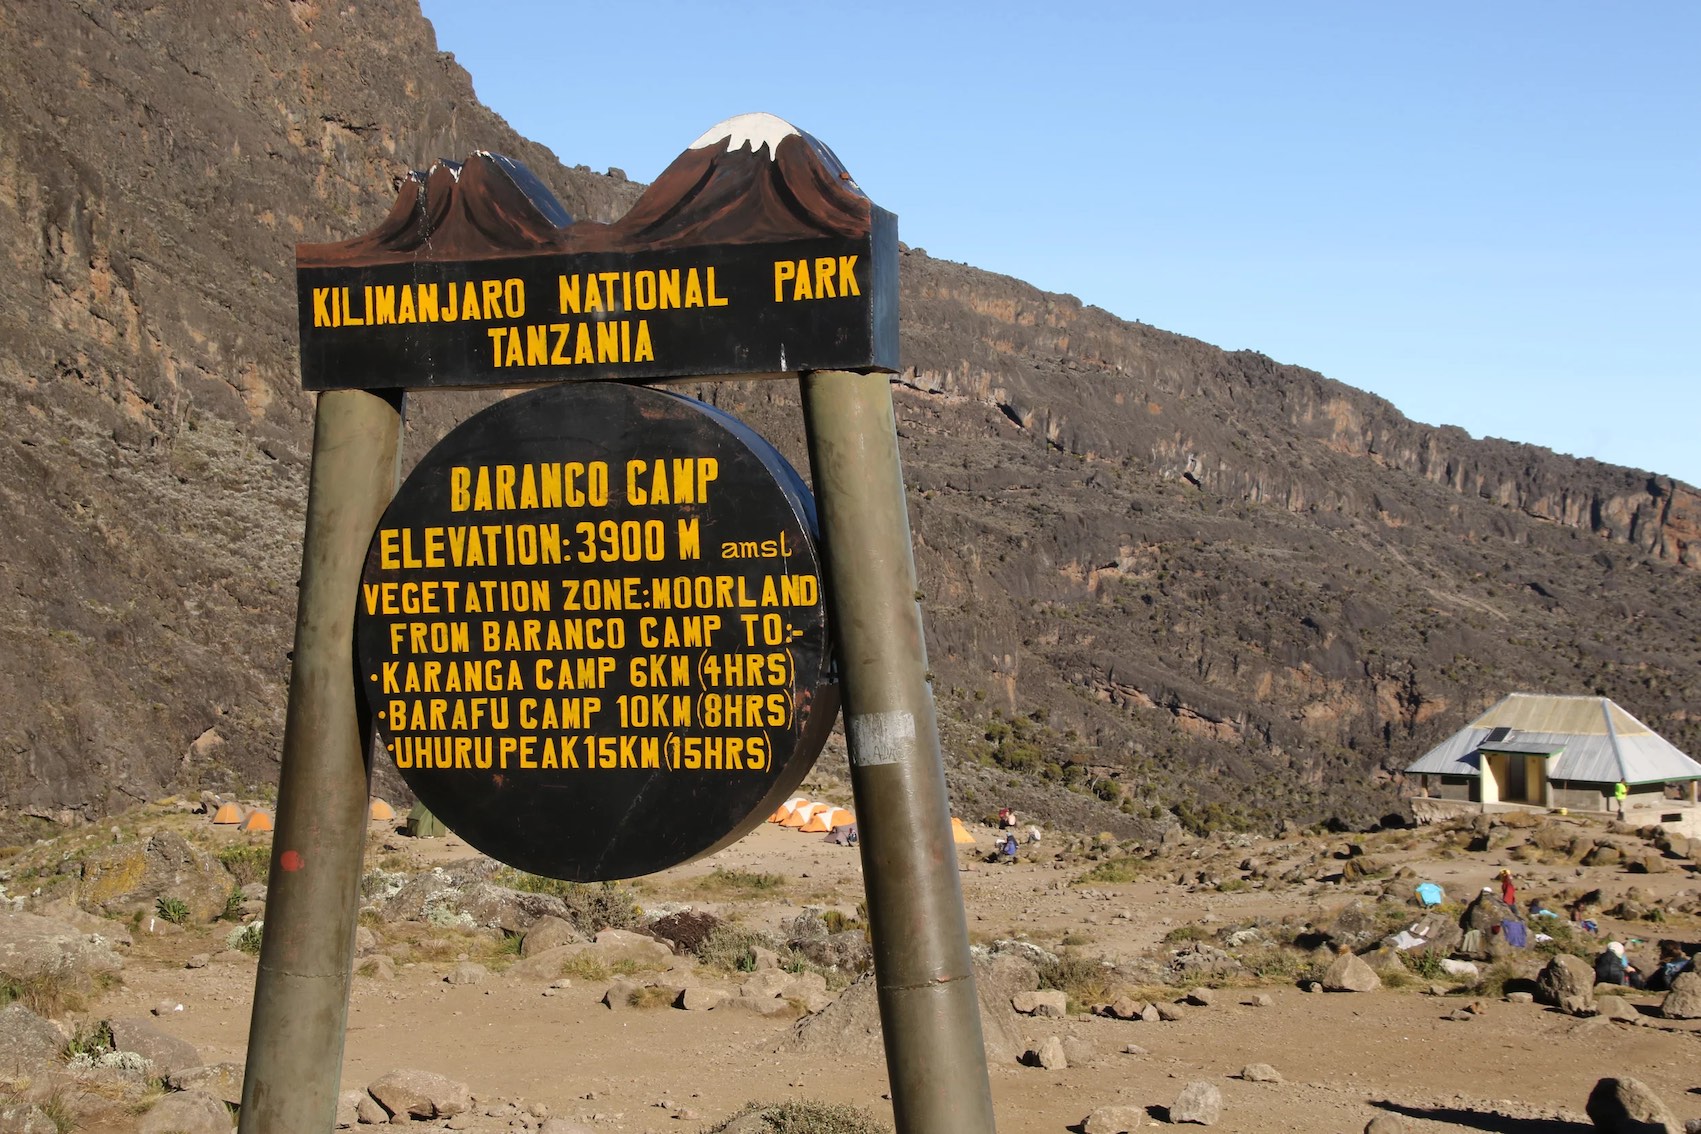 Ruta Umbwe, día 2/6: Campamento Cueva Umbwe (3000 m) - Campamento Barranco (3960 m)